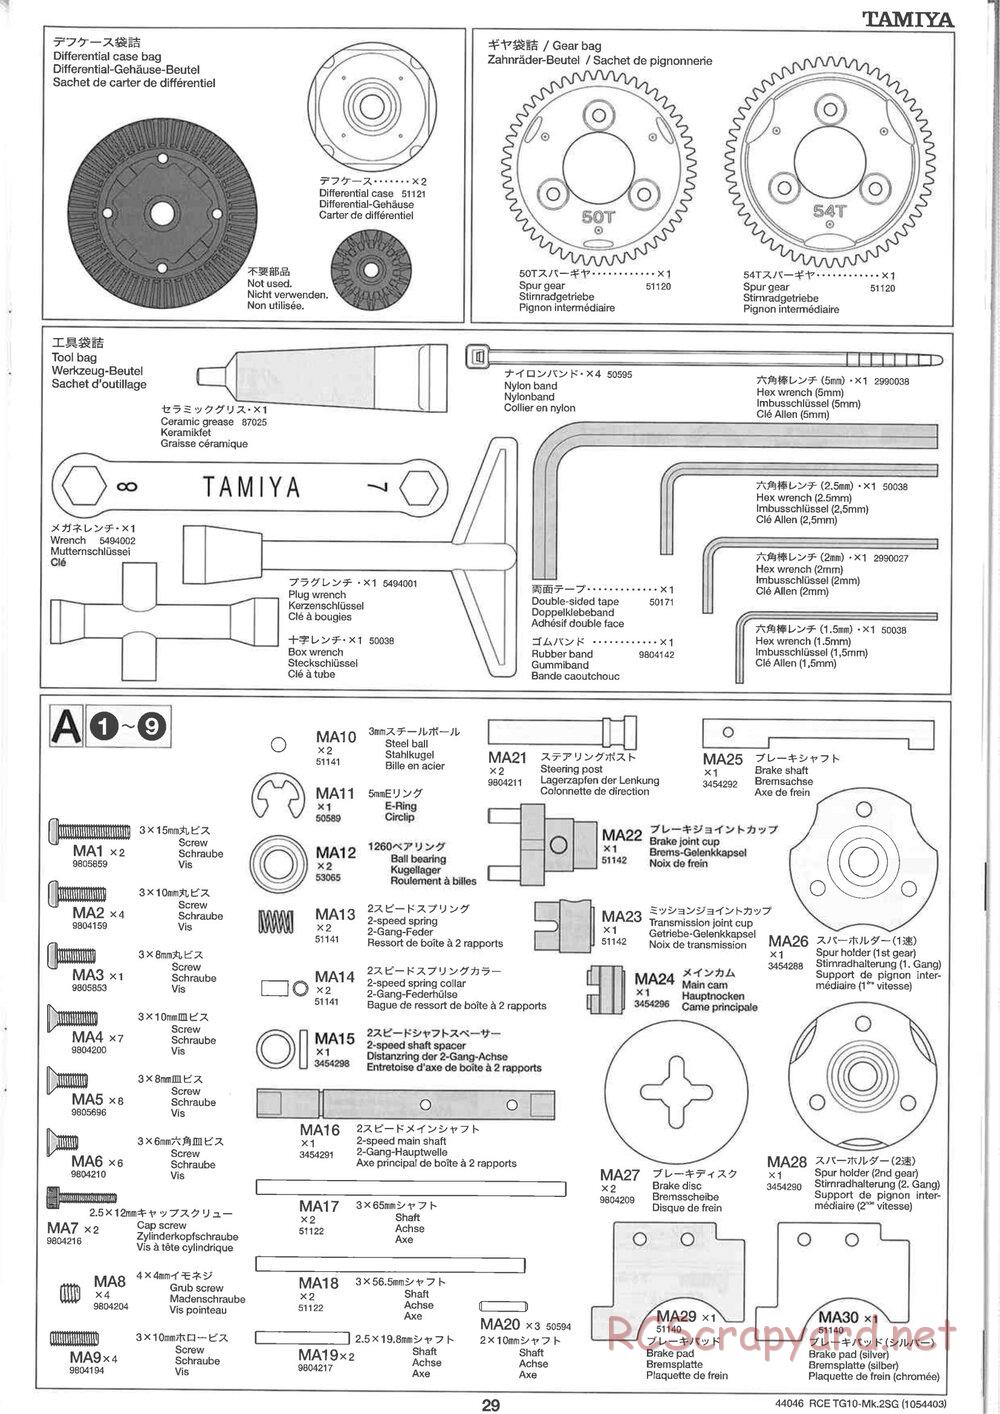 Tamiya - TG10 Mk.2SG Chassis - Manual - Page 29